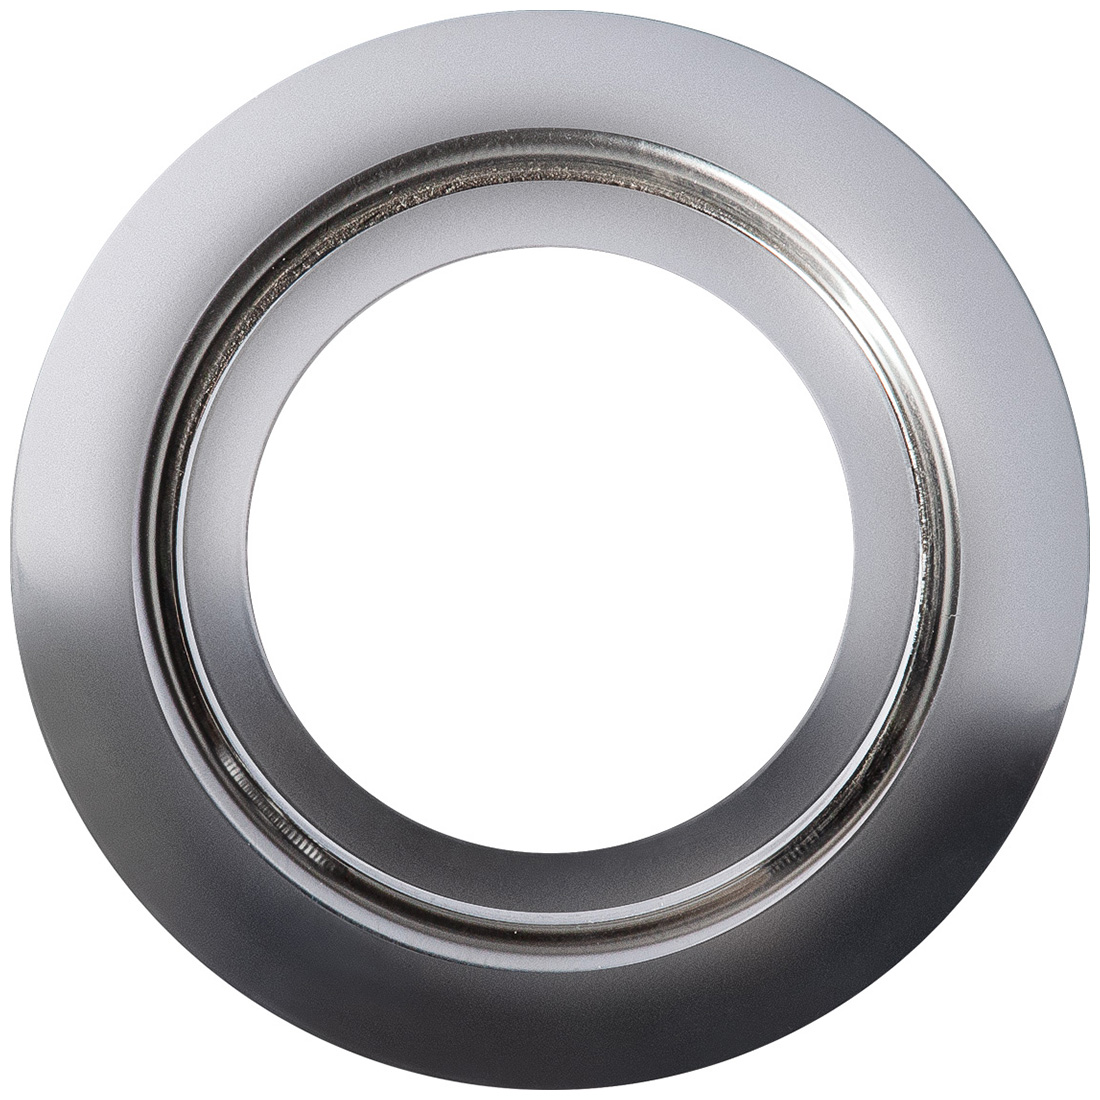 Кольцо переходник для измельчителя Bort Ring 160, 93412642 кольцо переходник для измельчителя bort ring 140 93412635